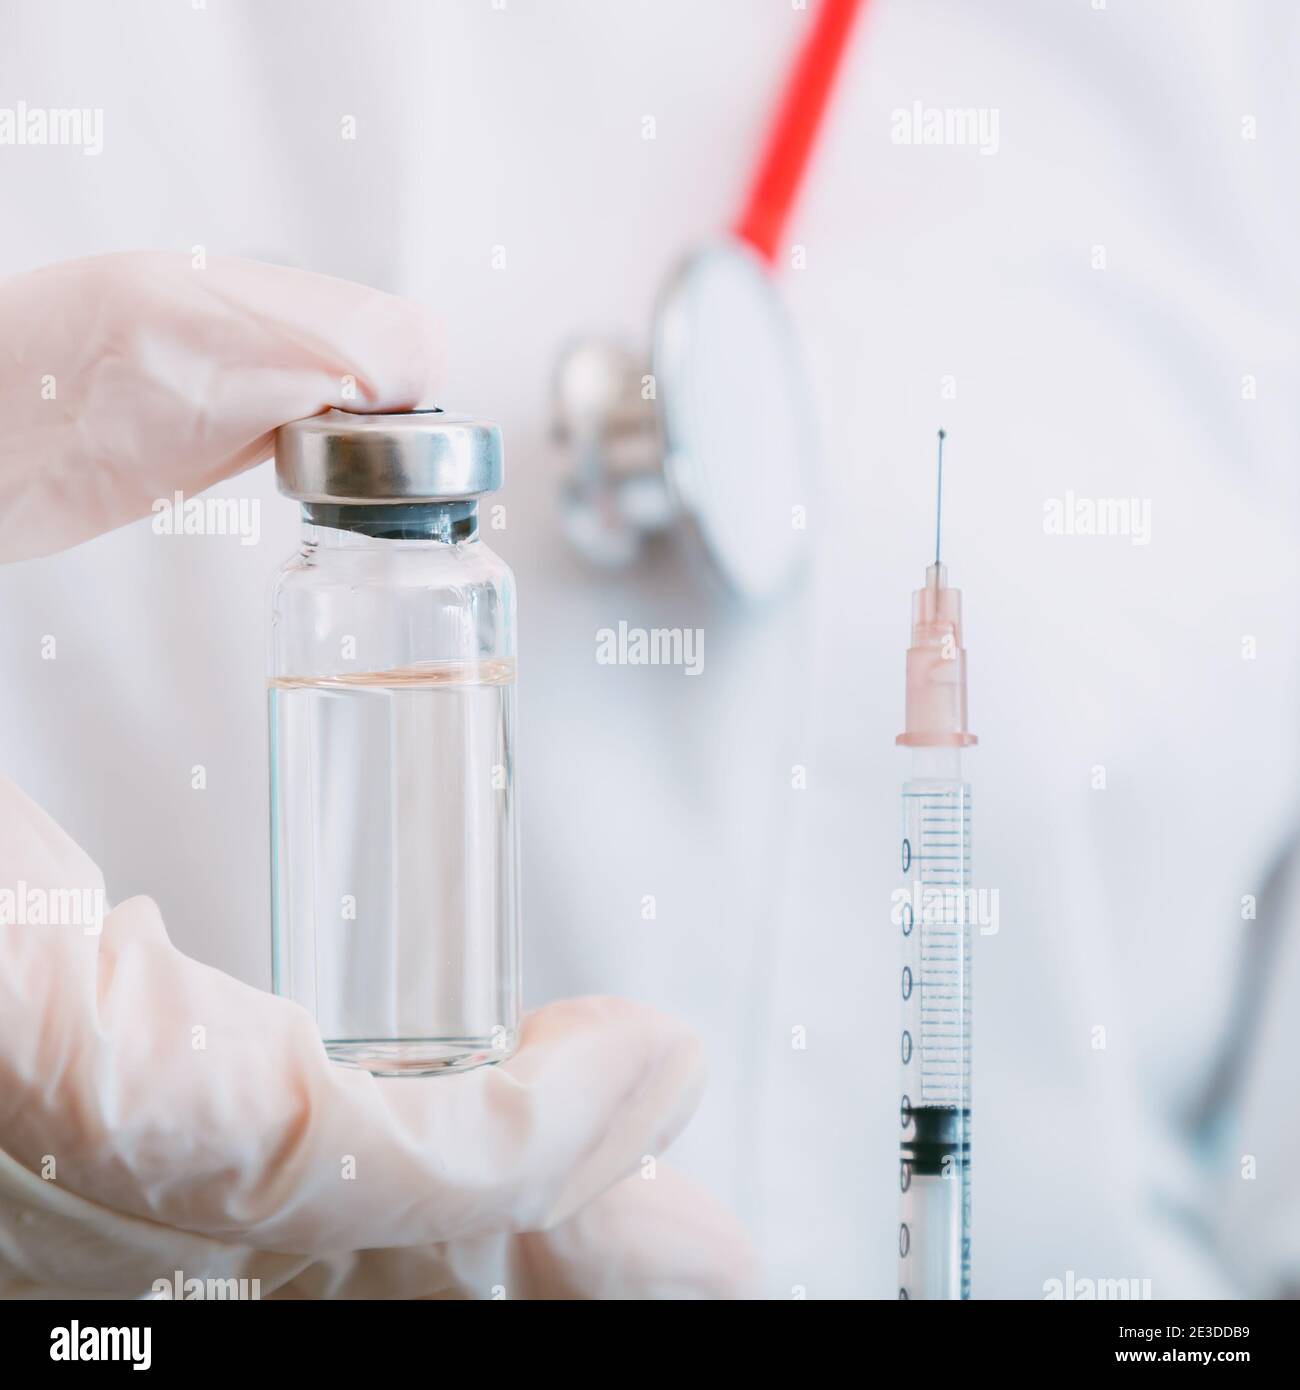 Vacuna Covid 19 en vial y jeringa, medicamento líquido en la mano del médico. Inyecciones de vacunación como tratamiento. Covid 19 Inmunización médica sanitaria Foto de stock